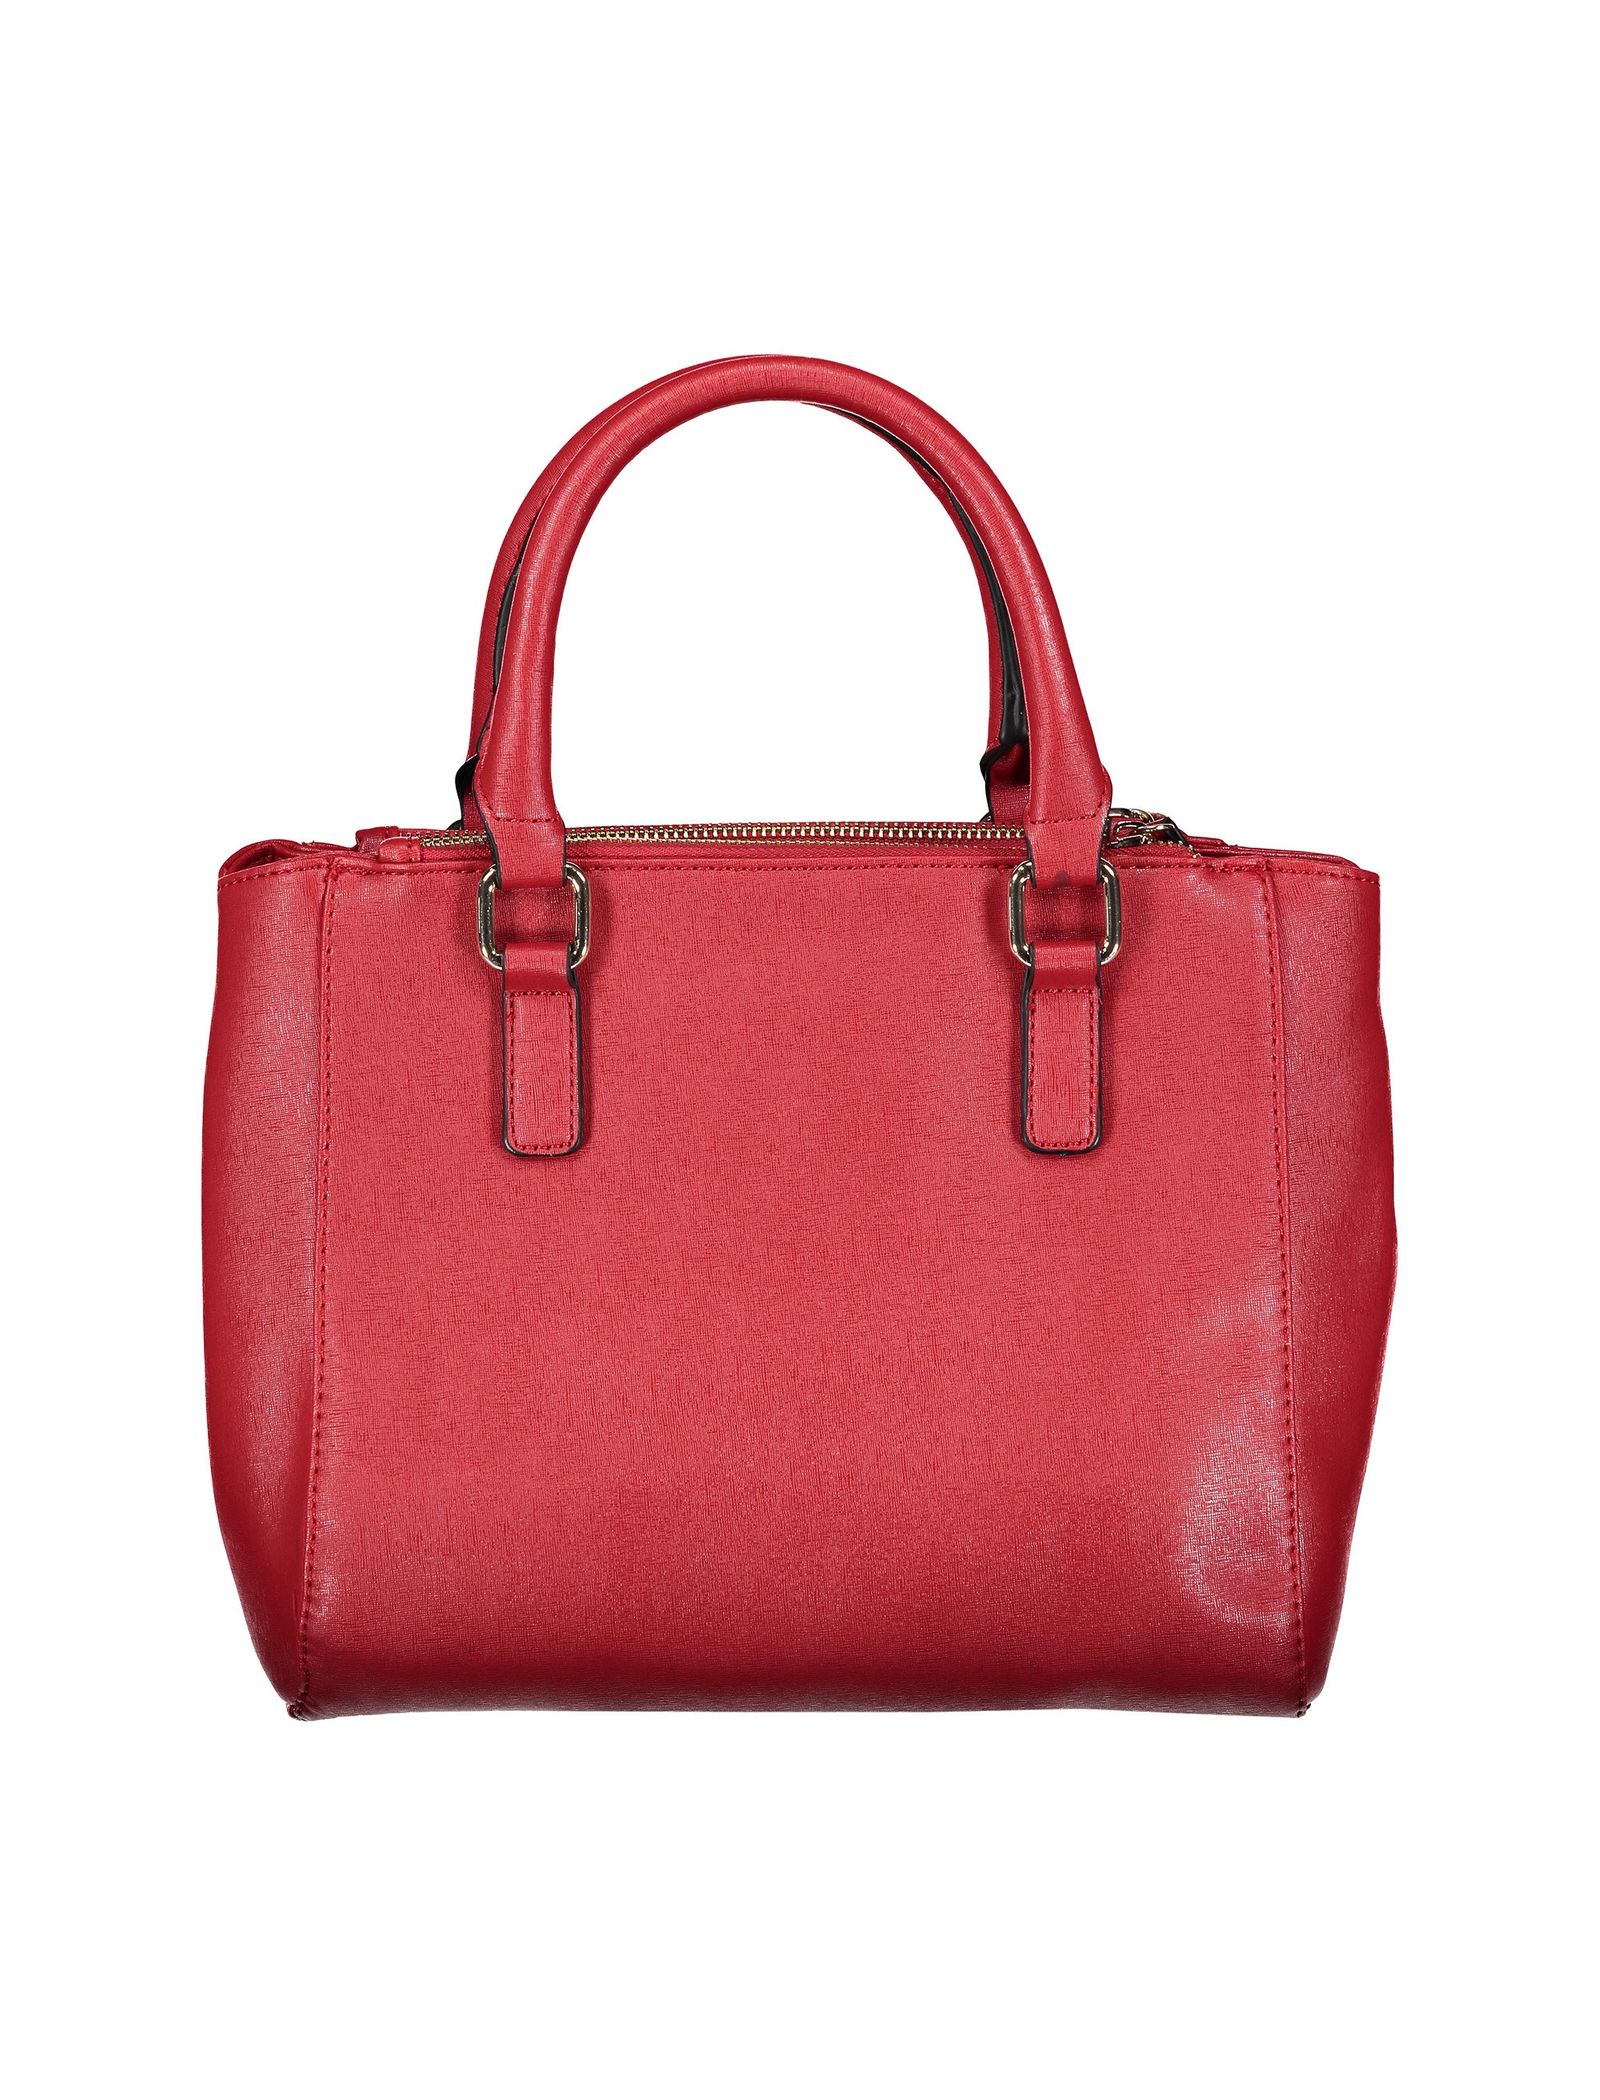 کیف دستی روزمره زنانه - کالکشن تک سایز - قرمز براق  - 3